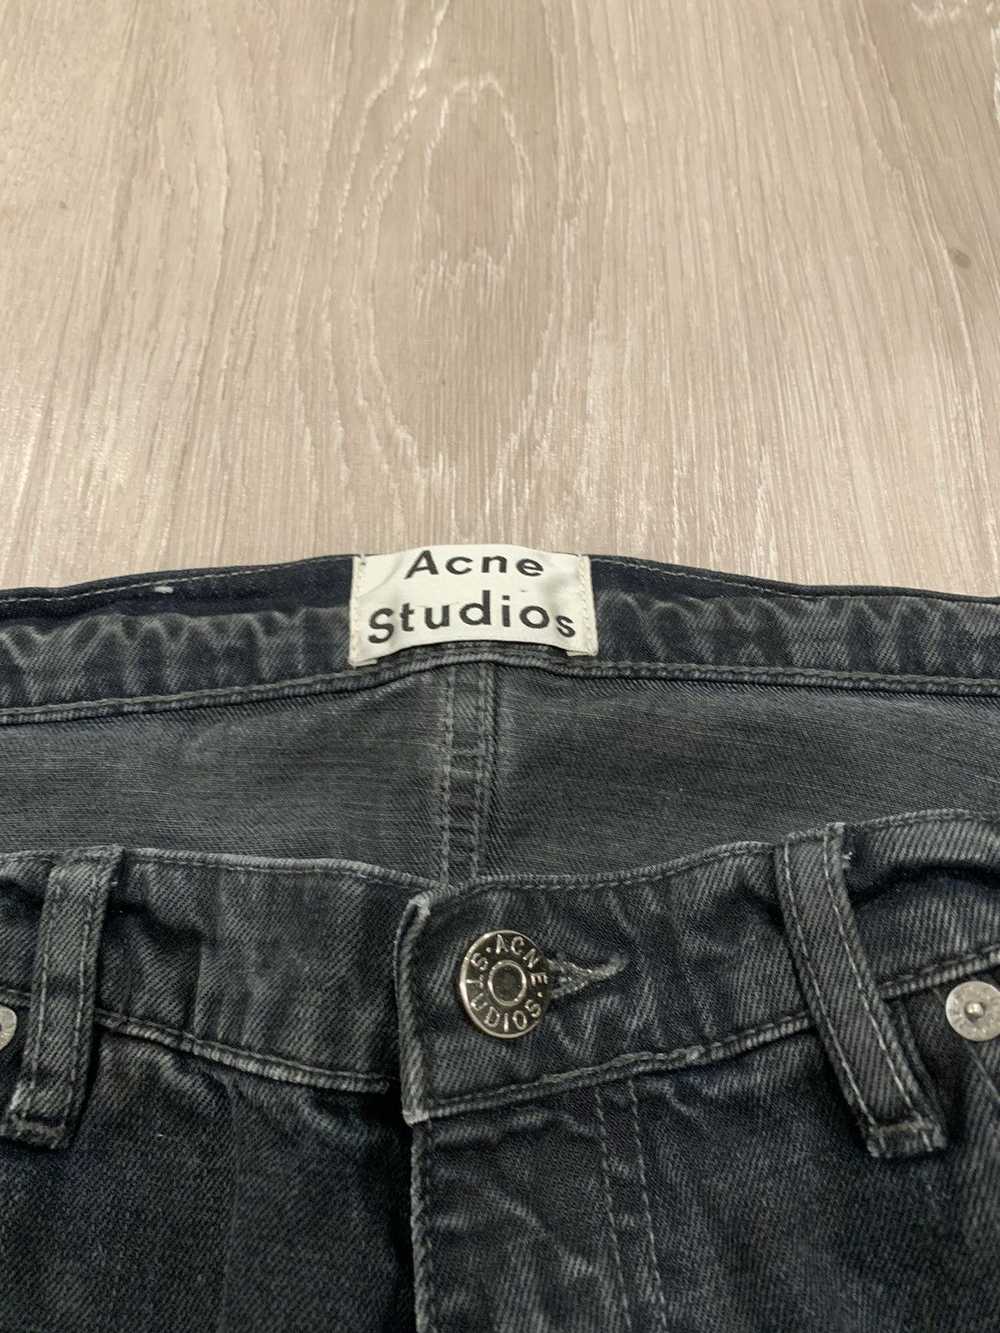 Acne Studios Acne Vega Corona Jeans - image 2